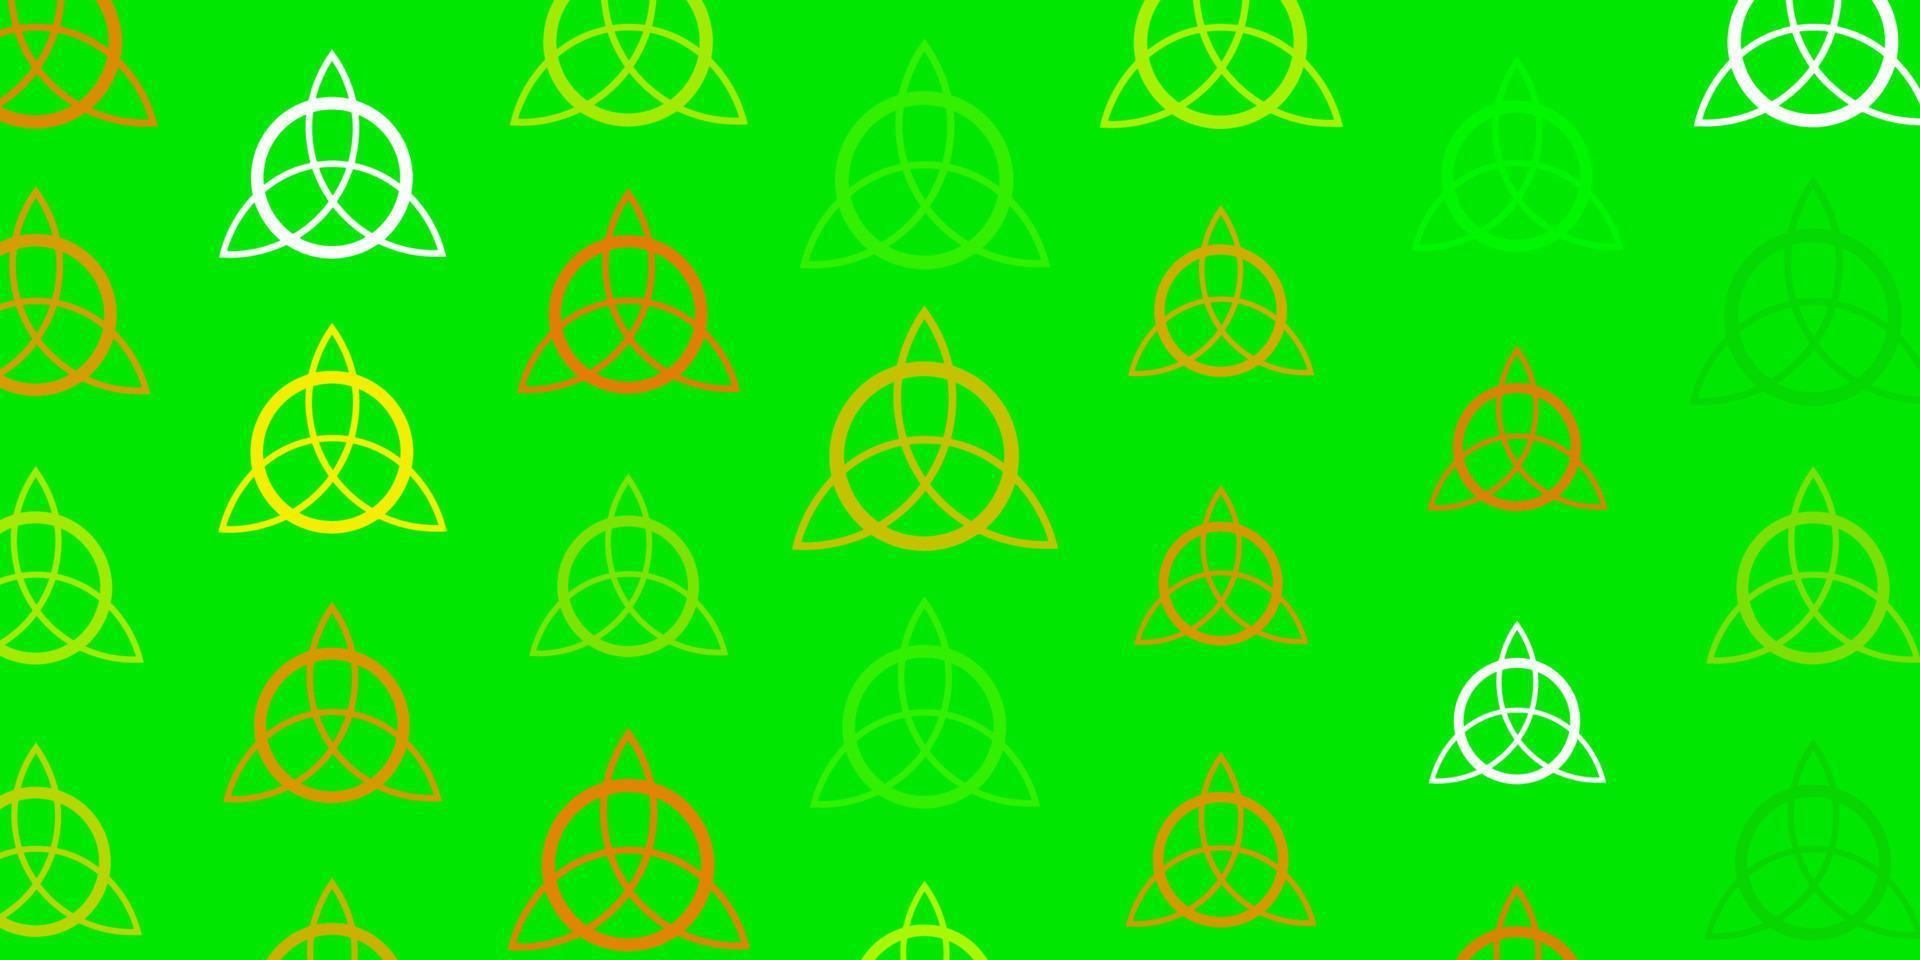 ljusgrön, gul vektorbakgrund med mysteriesymboler. vektor